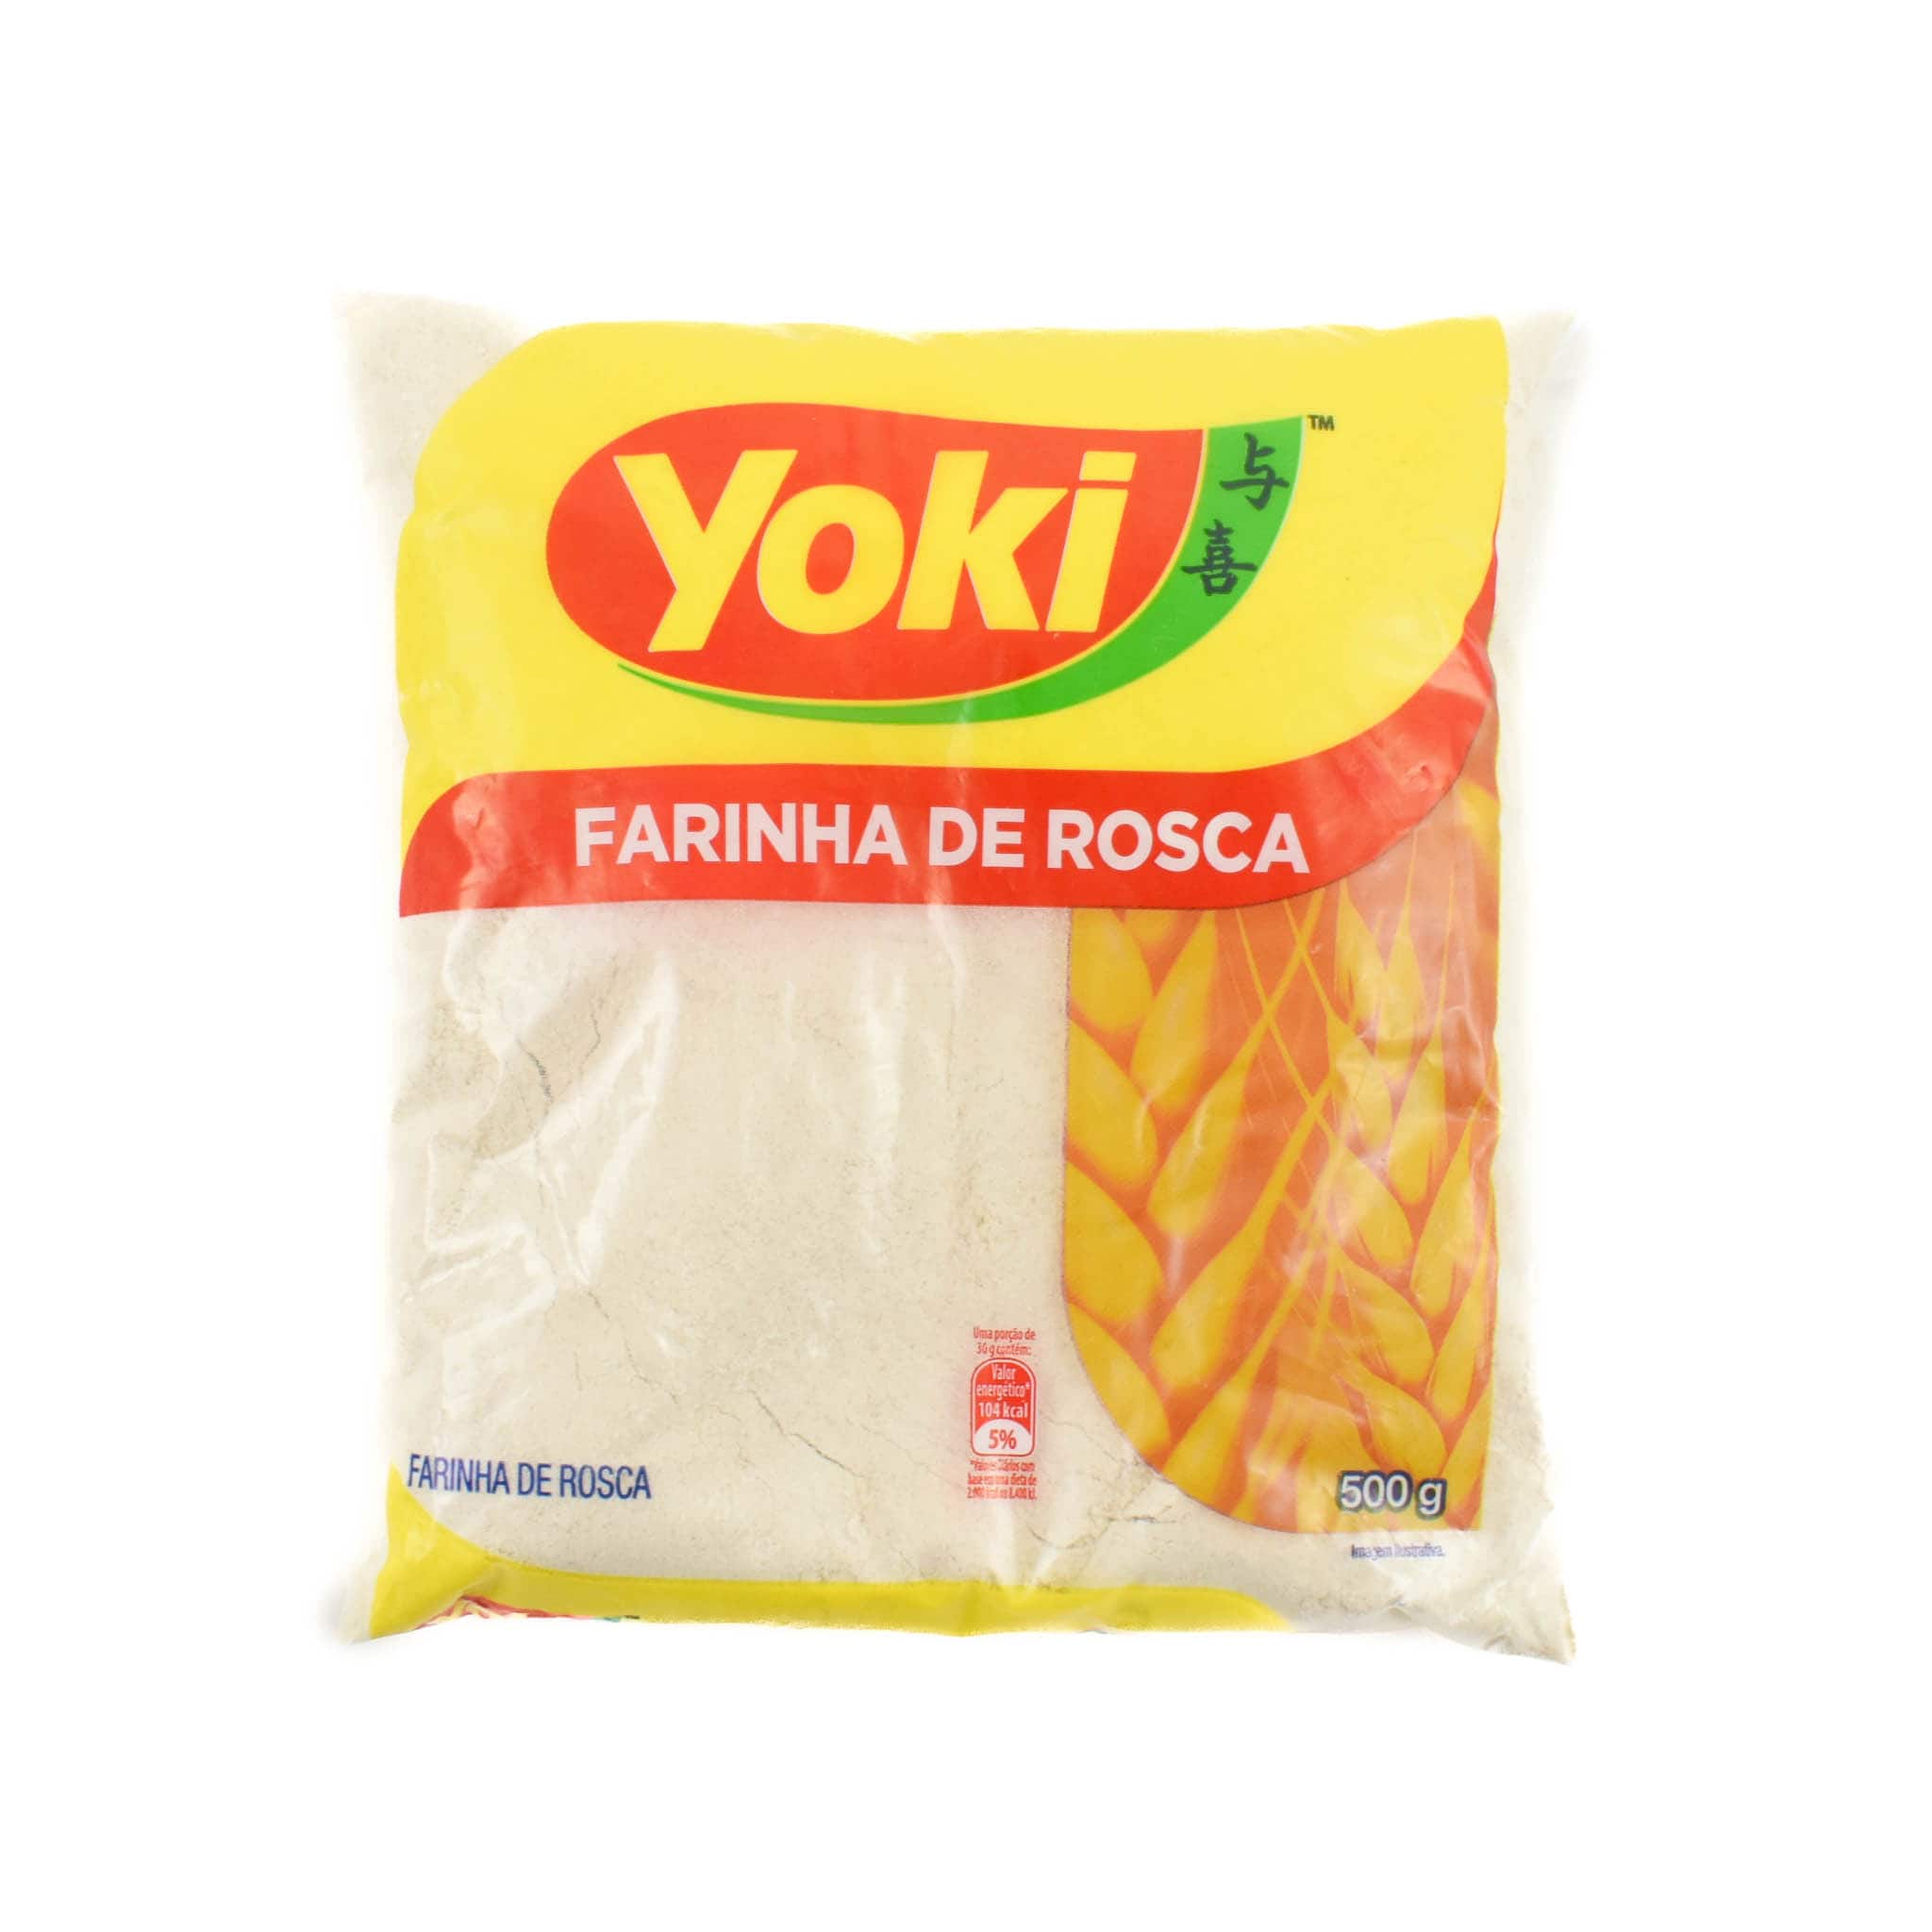 Yoki Farinha De Rosca Breadcrumbs, 500g